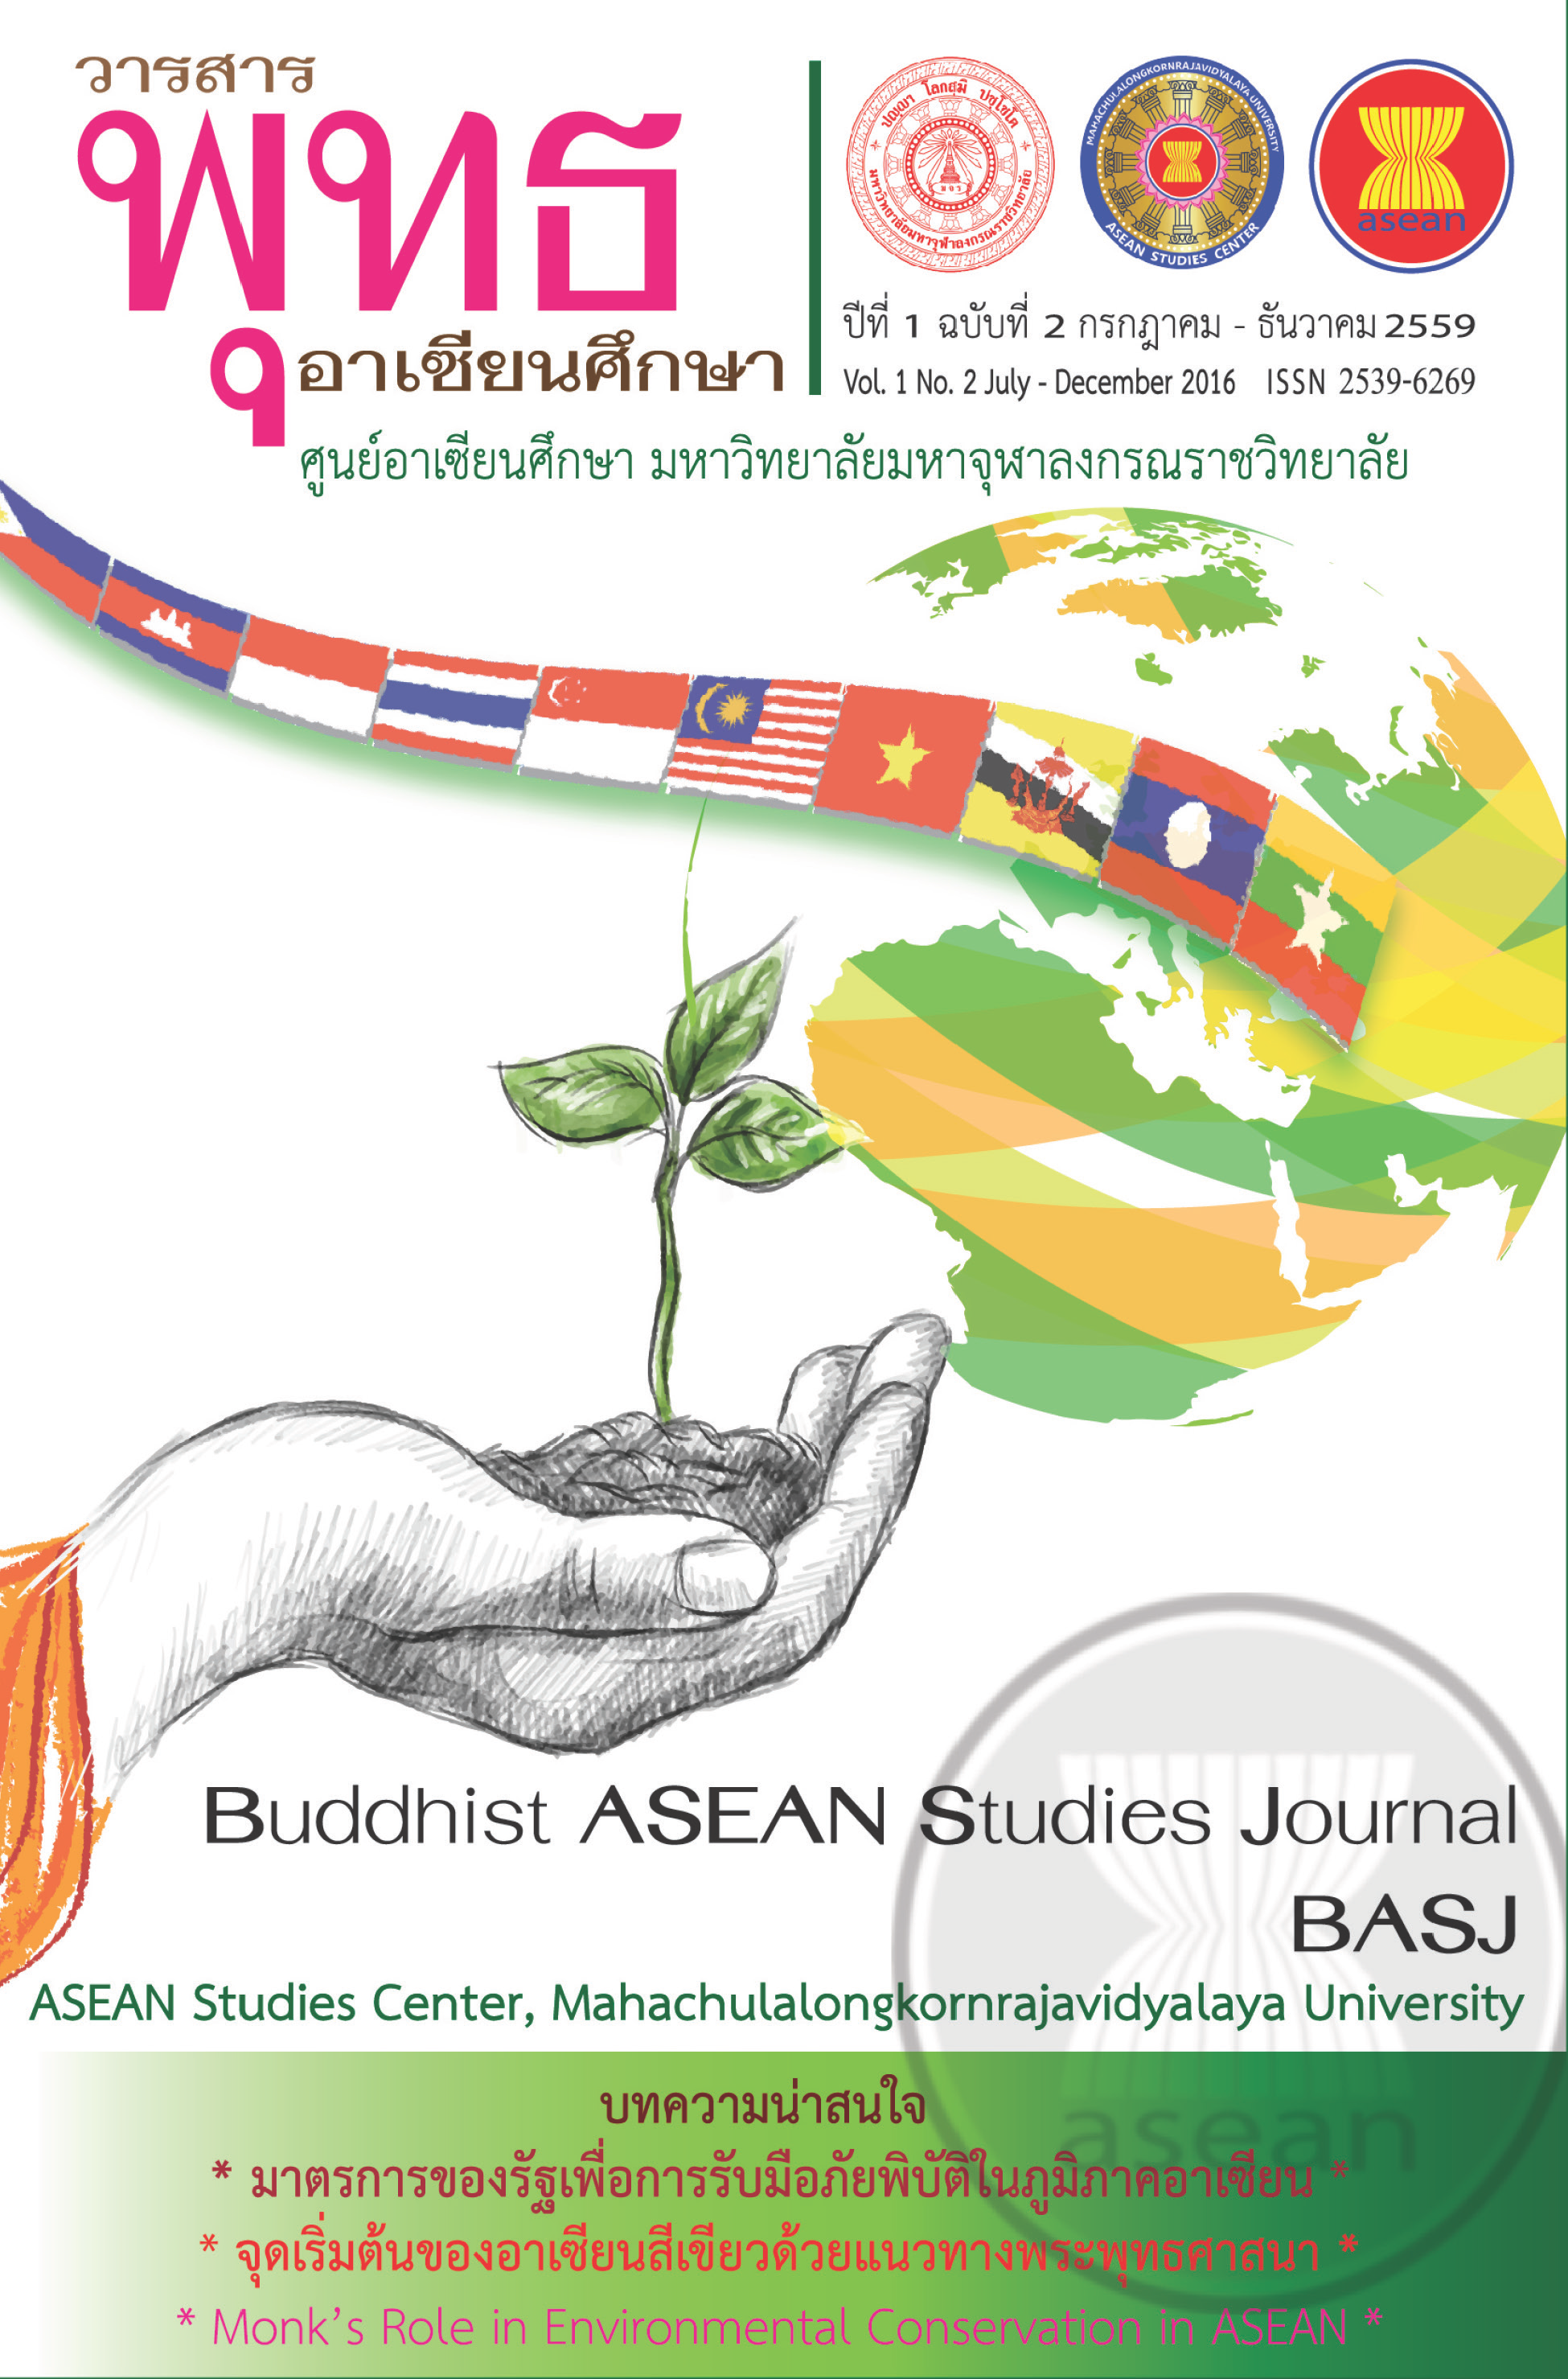 					ดู ปีที่ 1 ฉบับที่ 2 (2016): วารสารพุทธอาเซียนศึกษา ปีที่ 1 ฉบับที่ 2 (กรกฎาคม-ธันวาคม 2559)
				